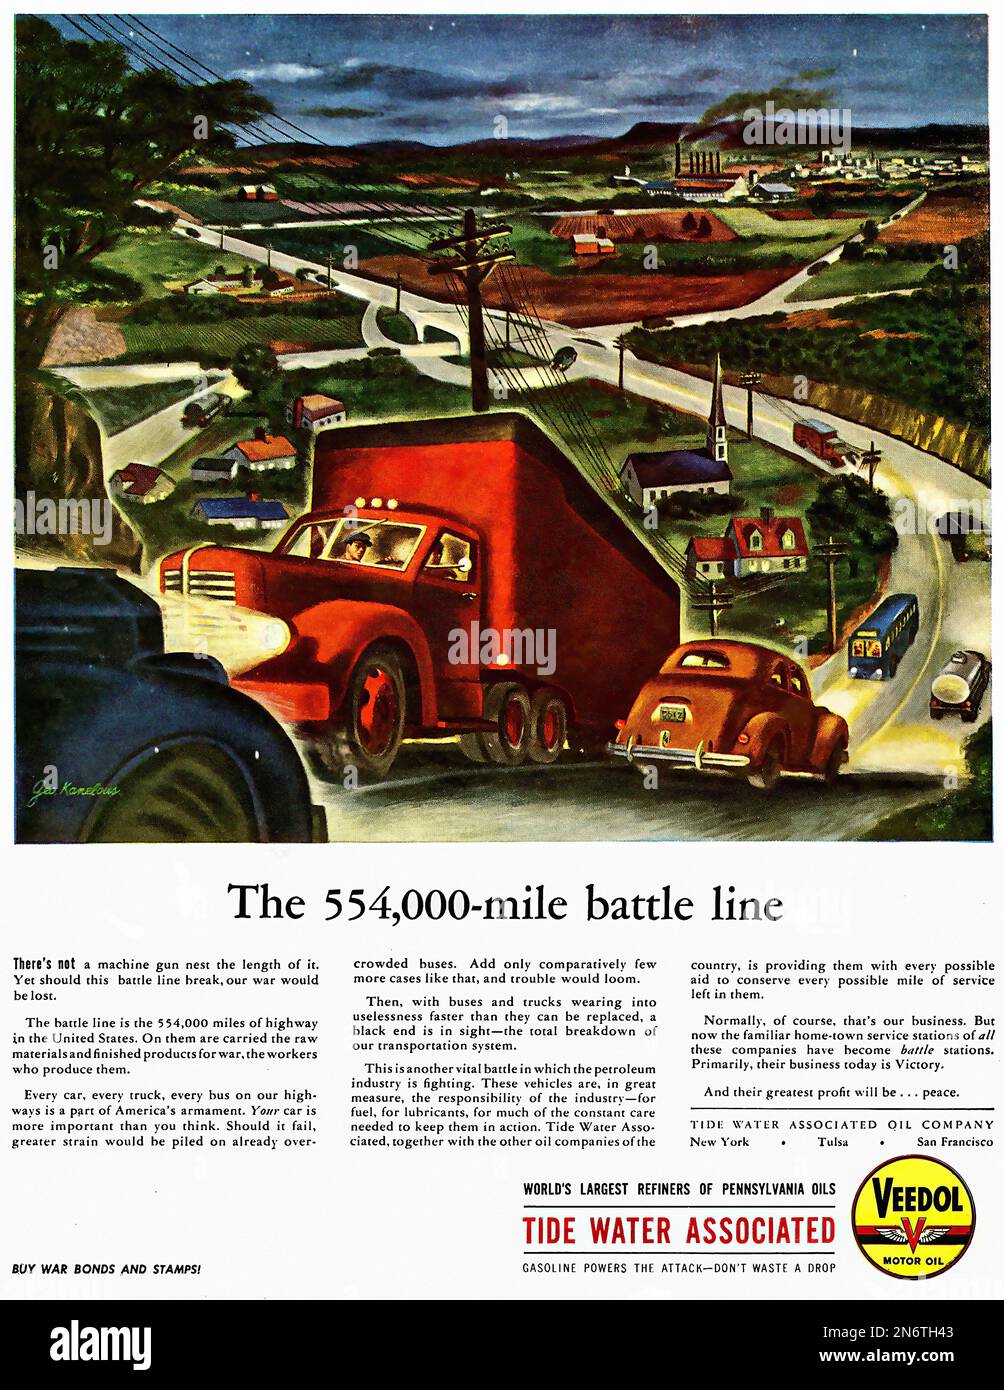 1944 - Gezeitenwasser assoziiert - Veedol Motor Oil - amerikanische (USA) Werbung während des Zweiten Weltkriegs Stockfoto